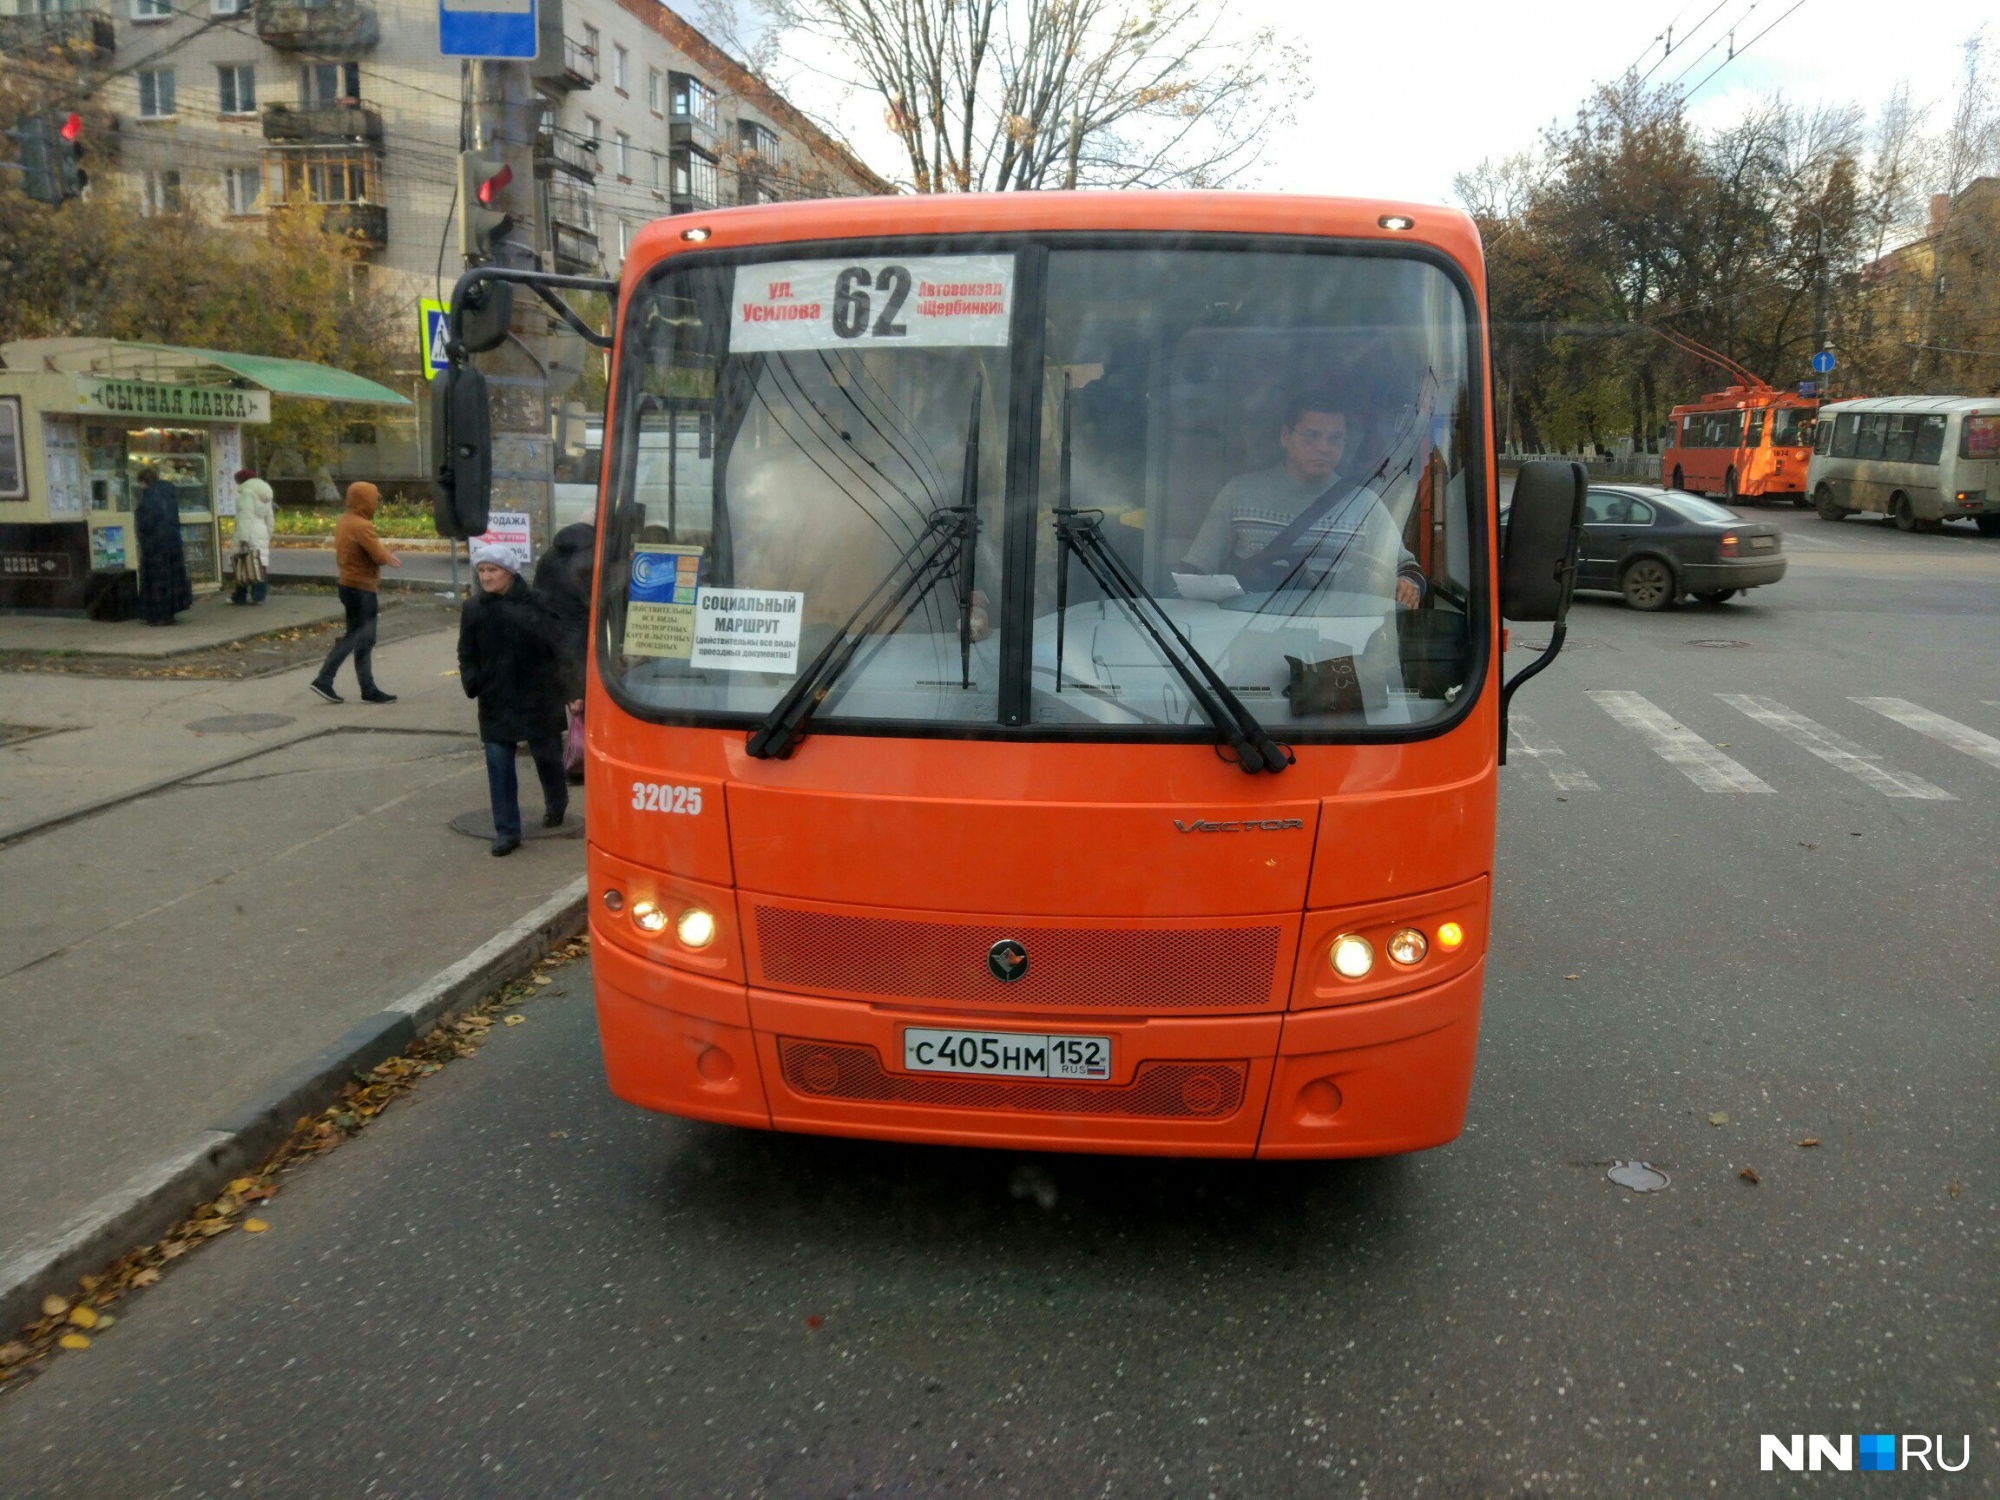 Лайф-хак для нижегородского пассажира. Как найти автобус, в котором действует проездной